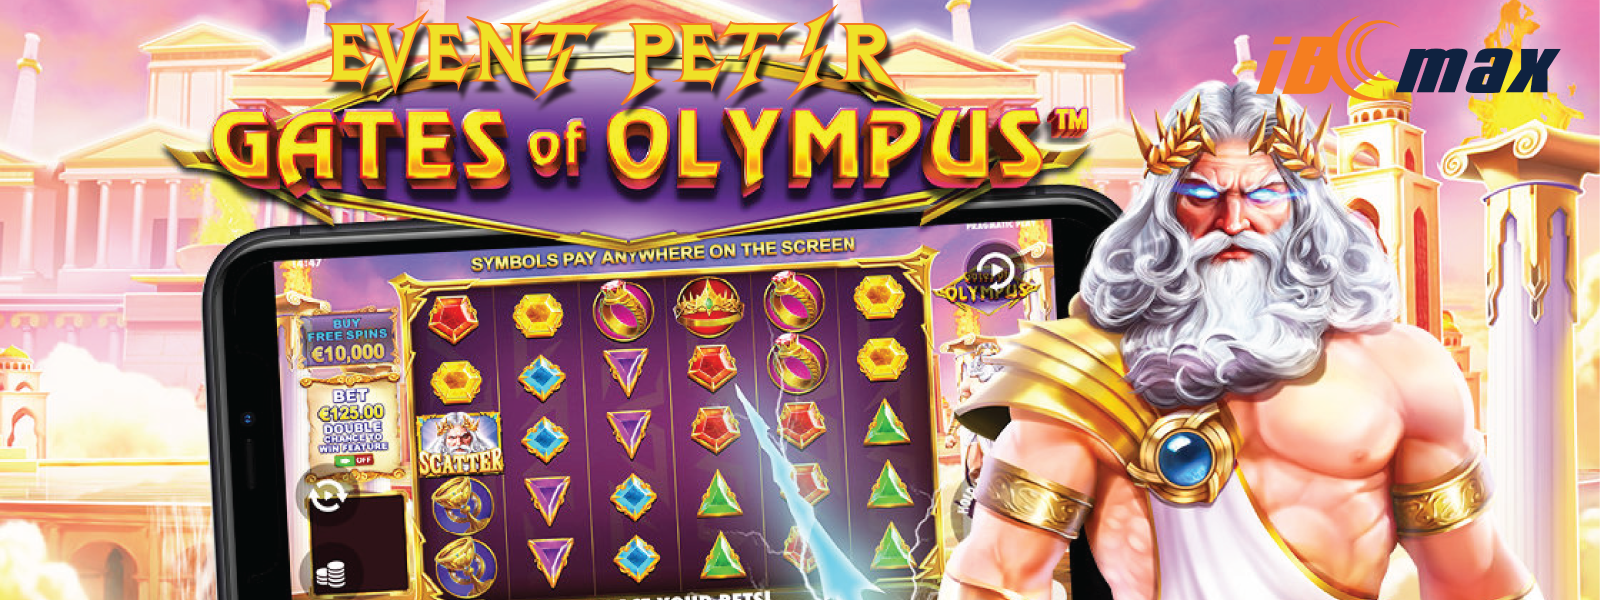 EVENT PETIR GATES OF OLYMPUS